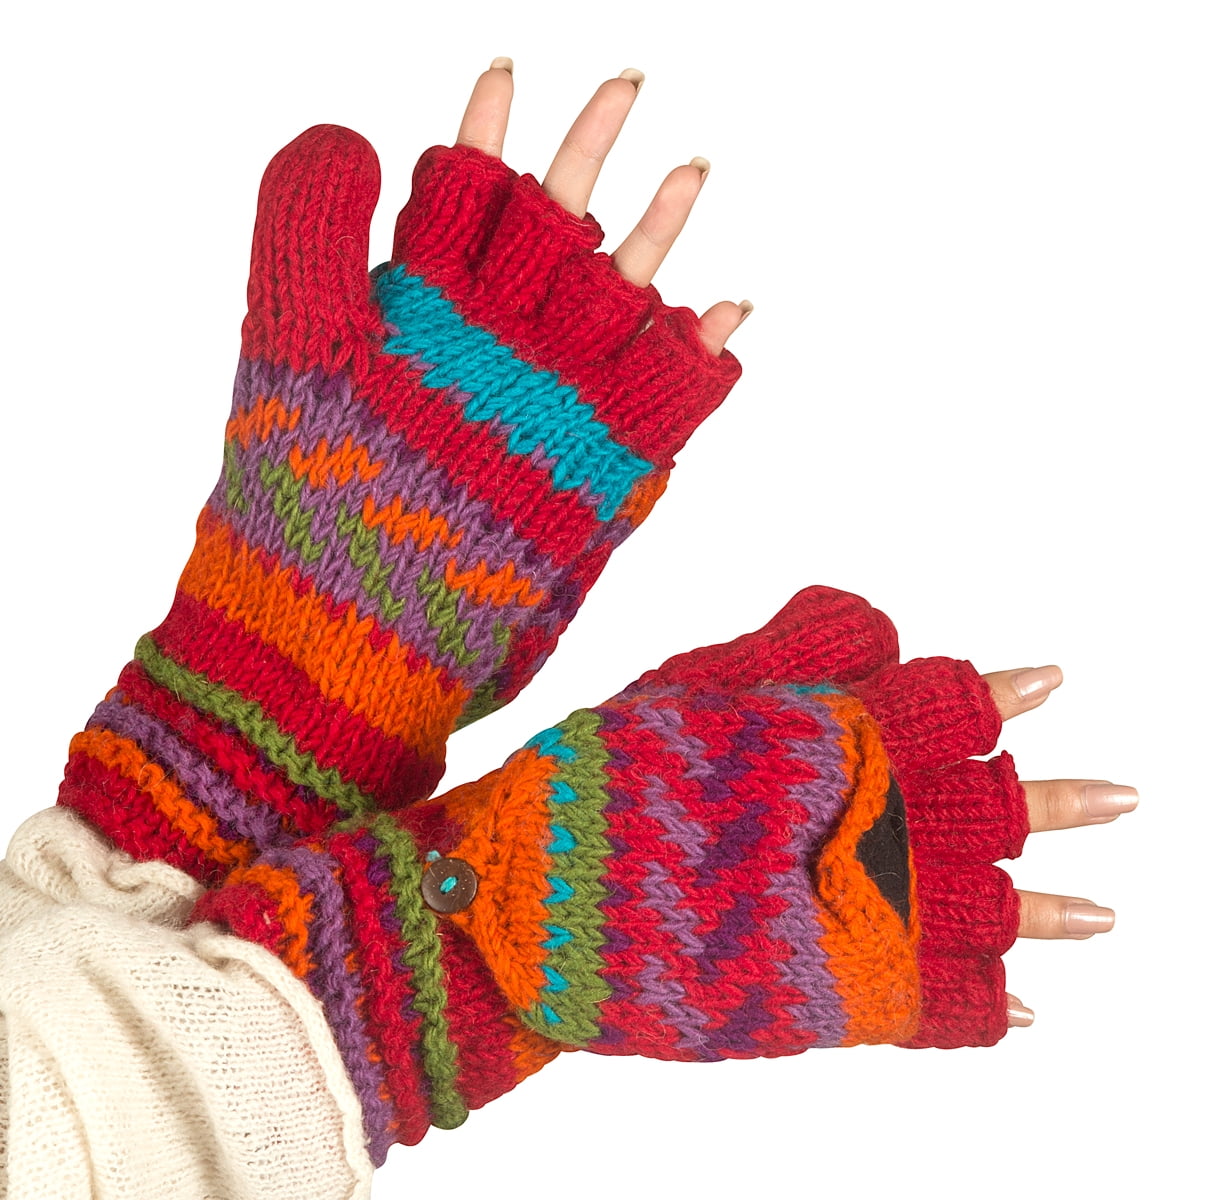 100% Woollen Mitten Handmade in Nepal Ski Gloves Pouch Handwarmer Fingerless 